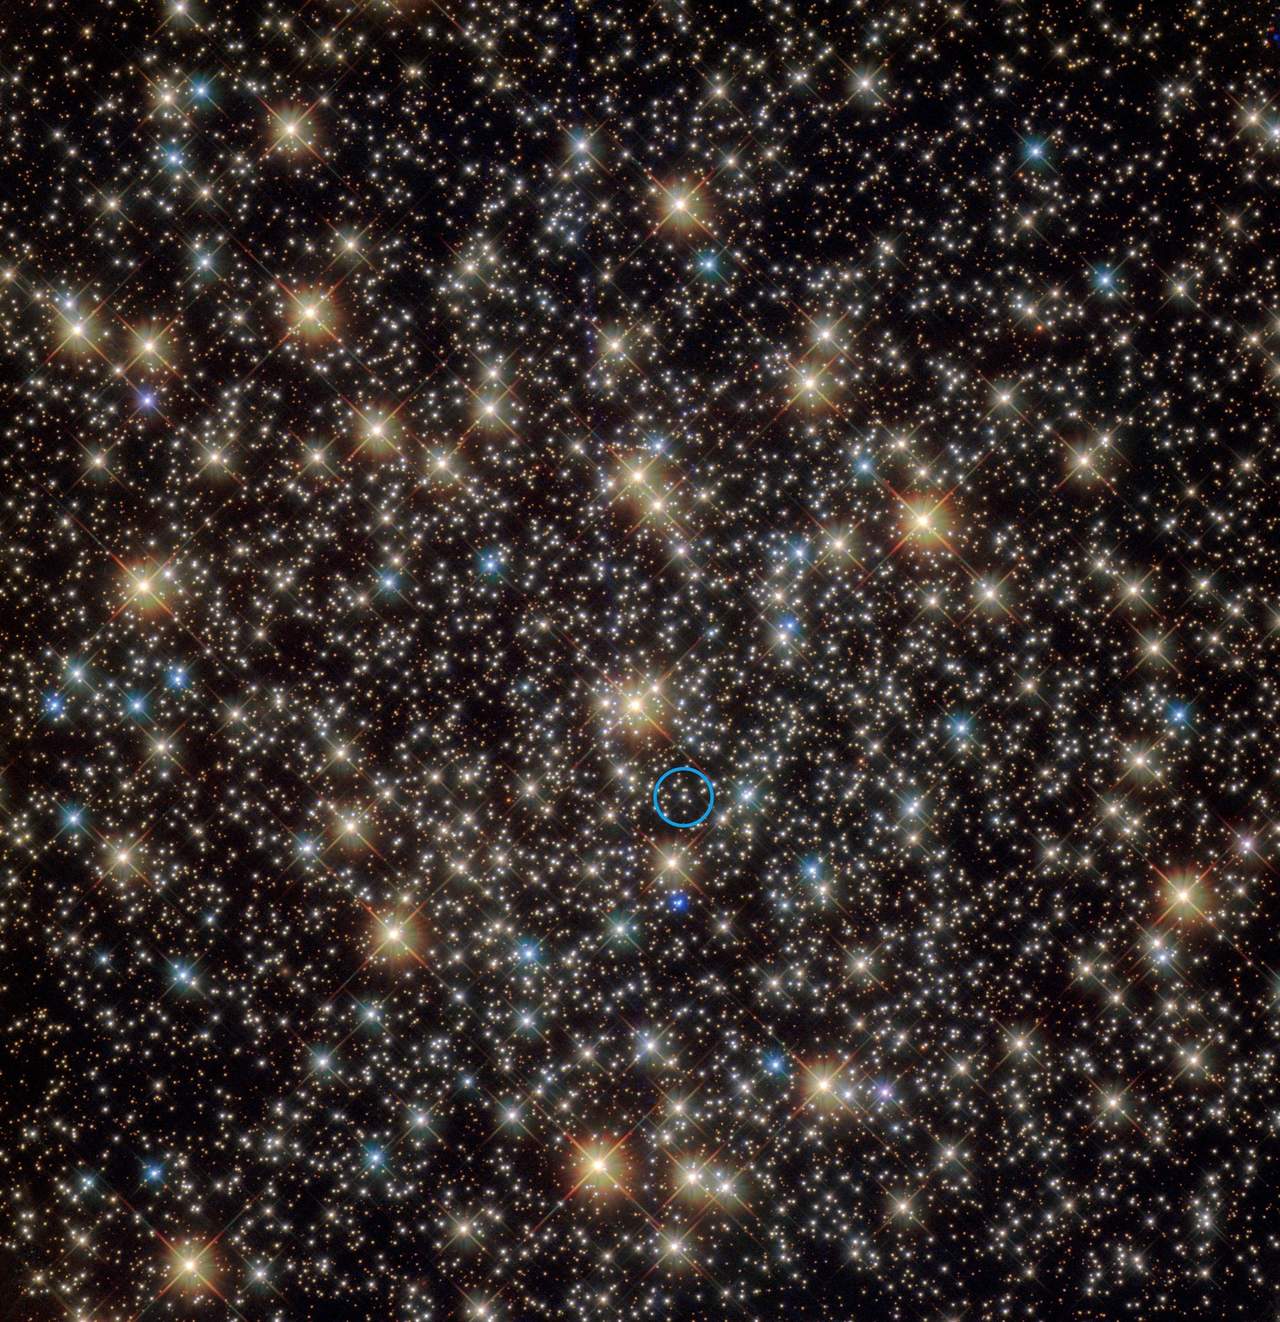 Los científicos están convencidos de que en el cúmulo NGC 3201, situado en la constelación meridional de Vela, hay un agujero negro con masa estelar inactivo con una masa de unas cuatro veces la del sol. (EFE)